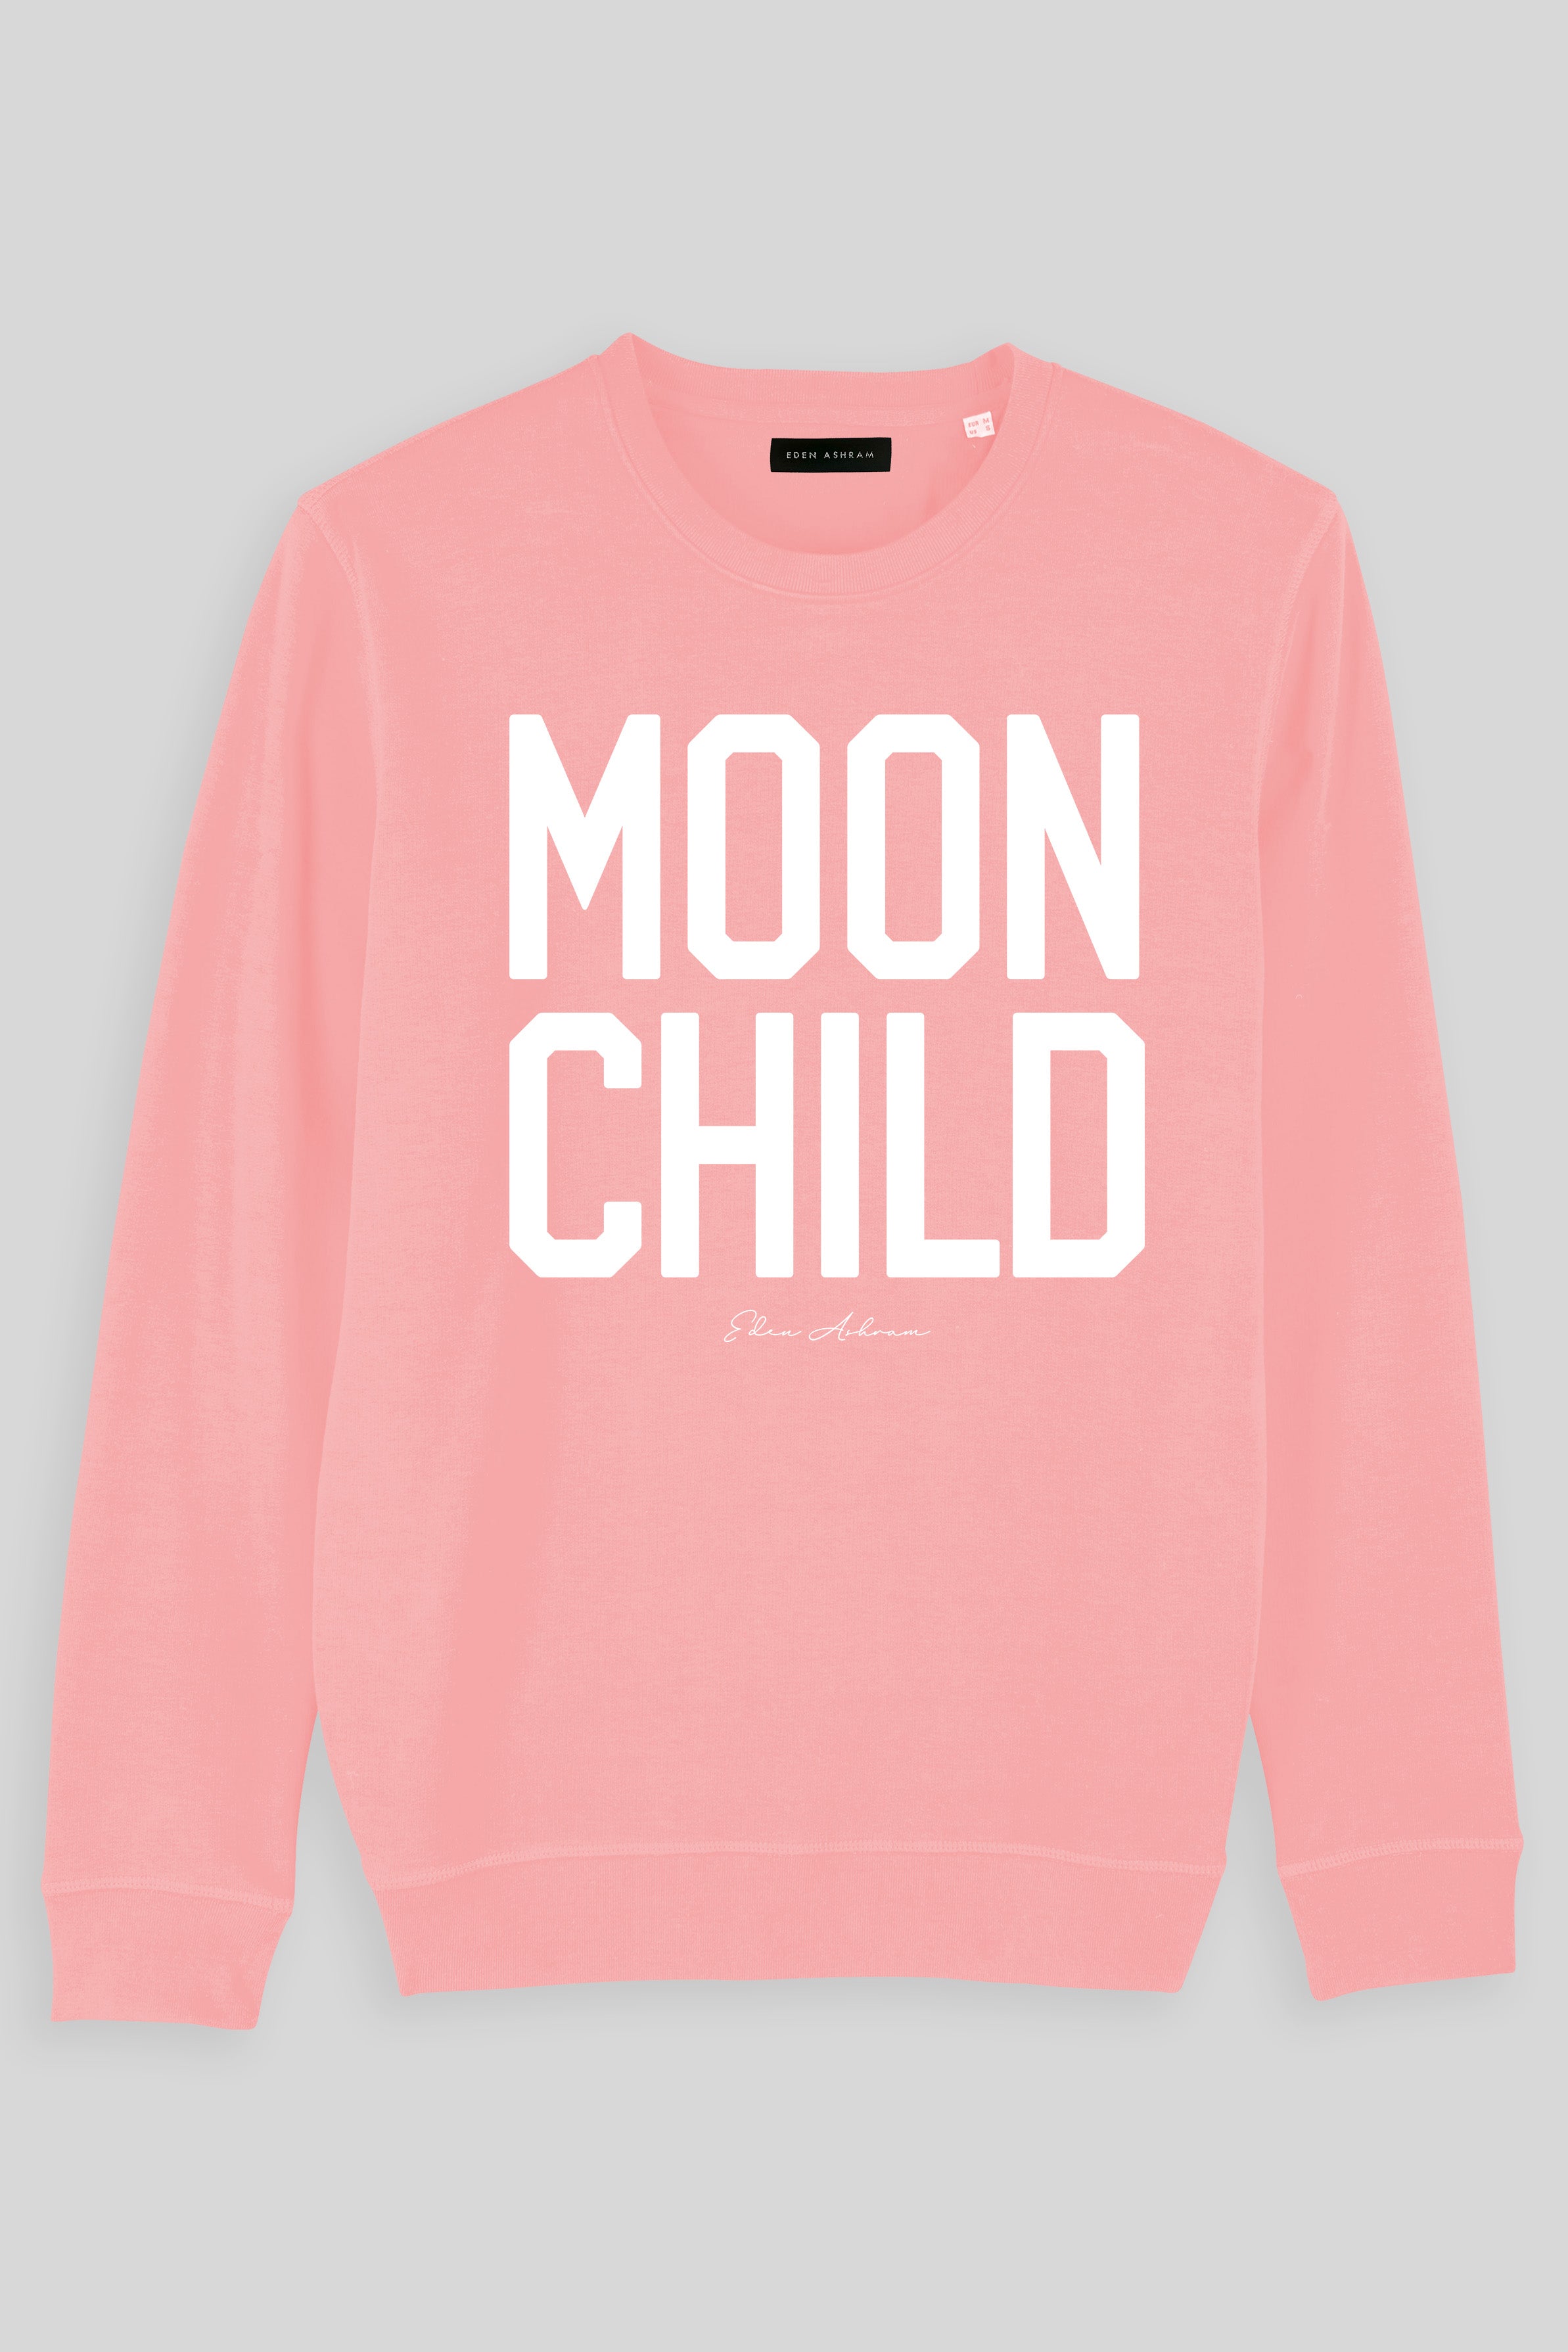 Eden Ashram Moon Child Premium Crew Neck Sweatshirt Coral Pink